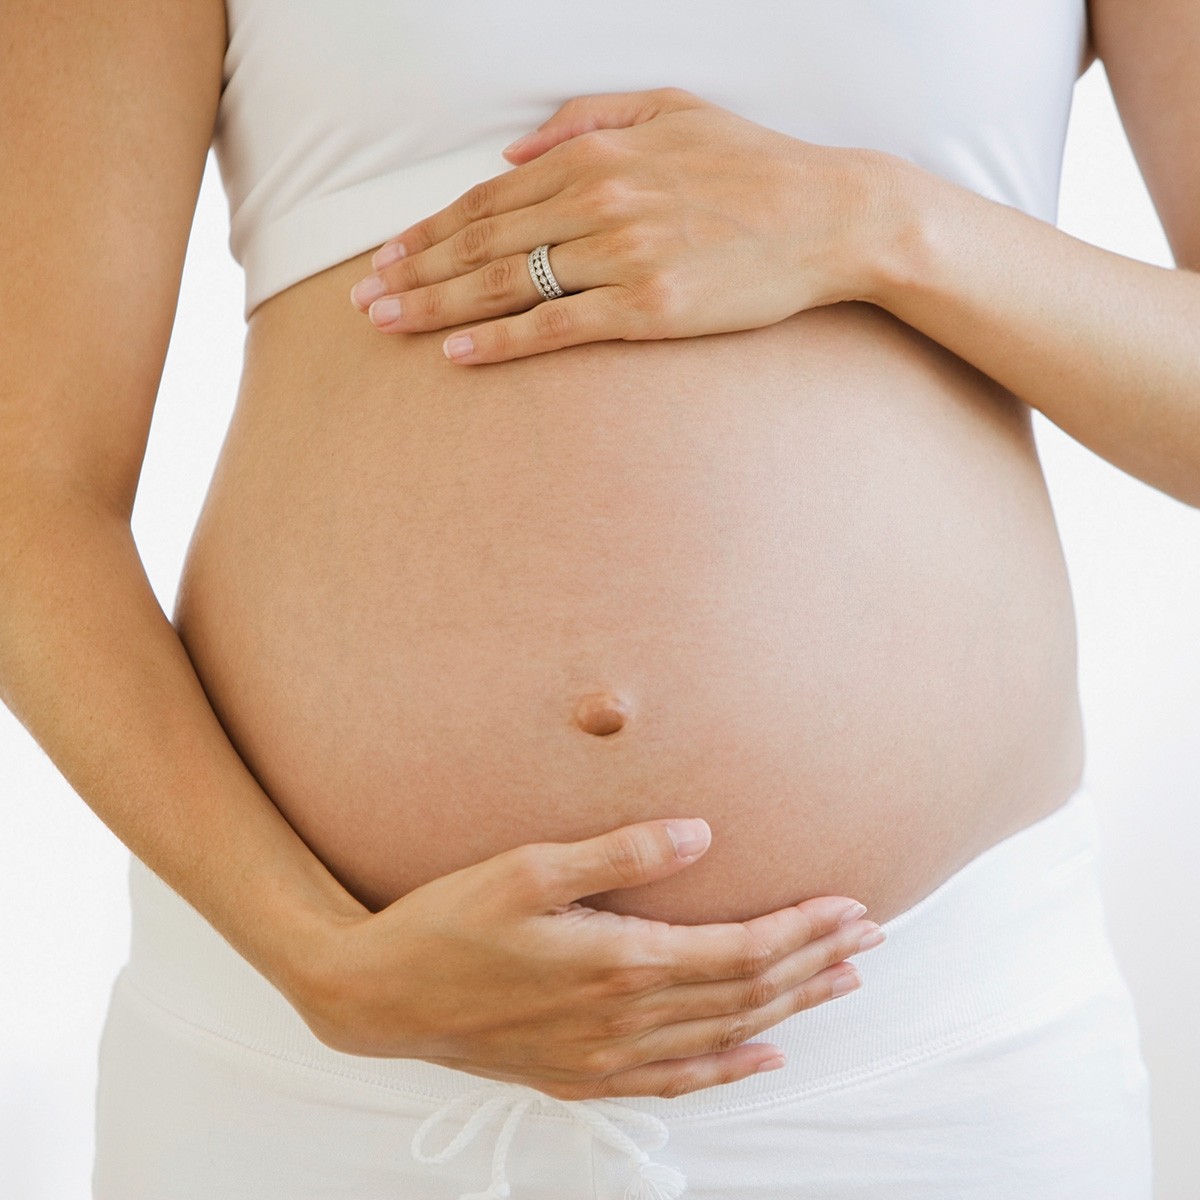 Coronavirus, come comportarsi in gravidanza e durante l’allattamento